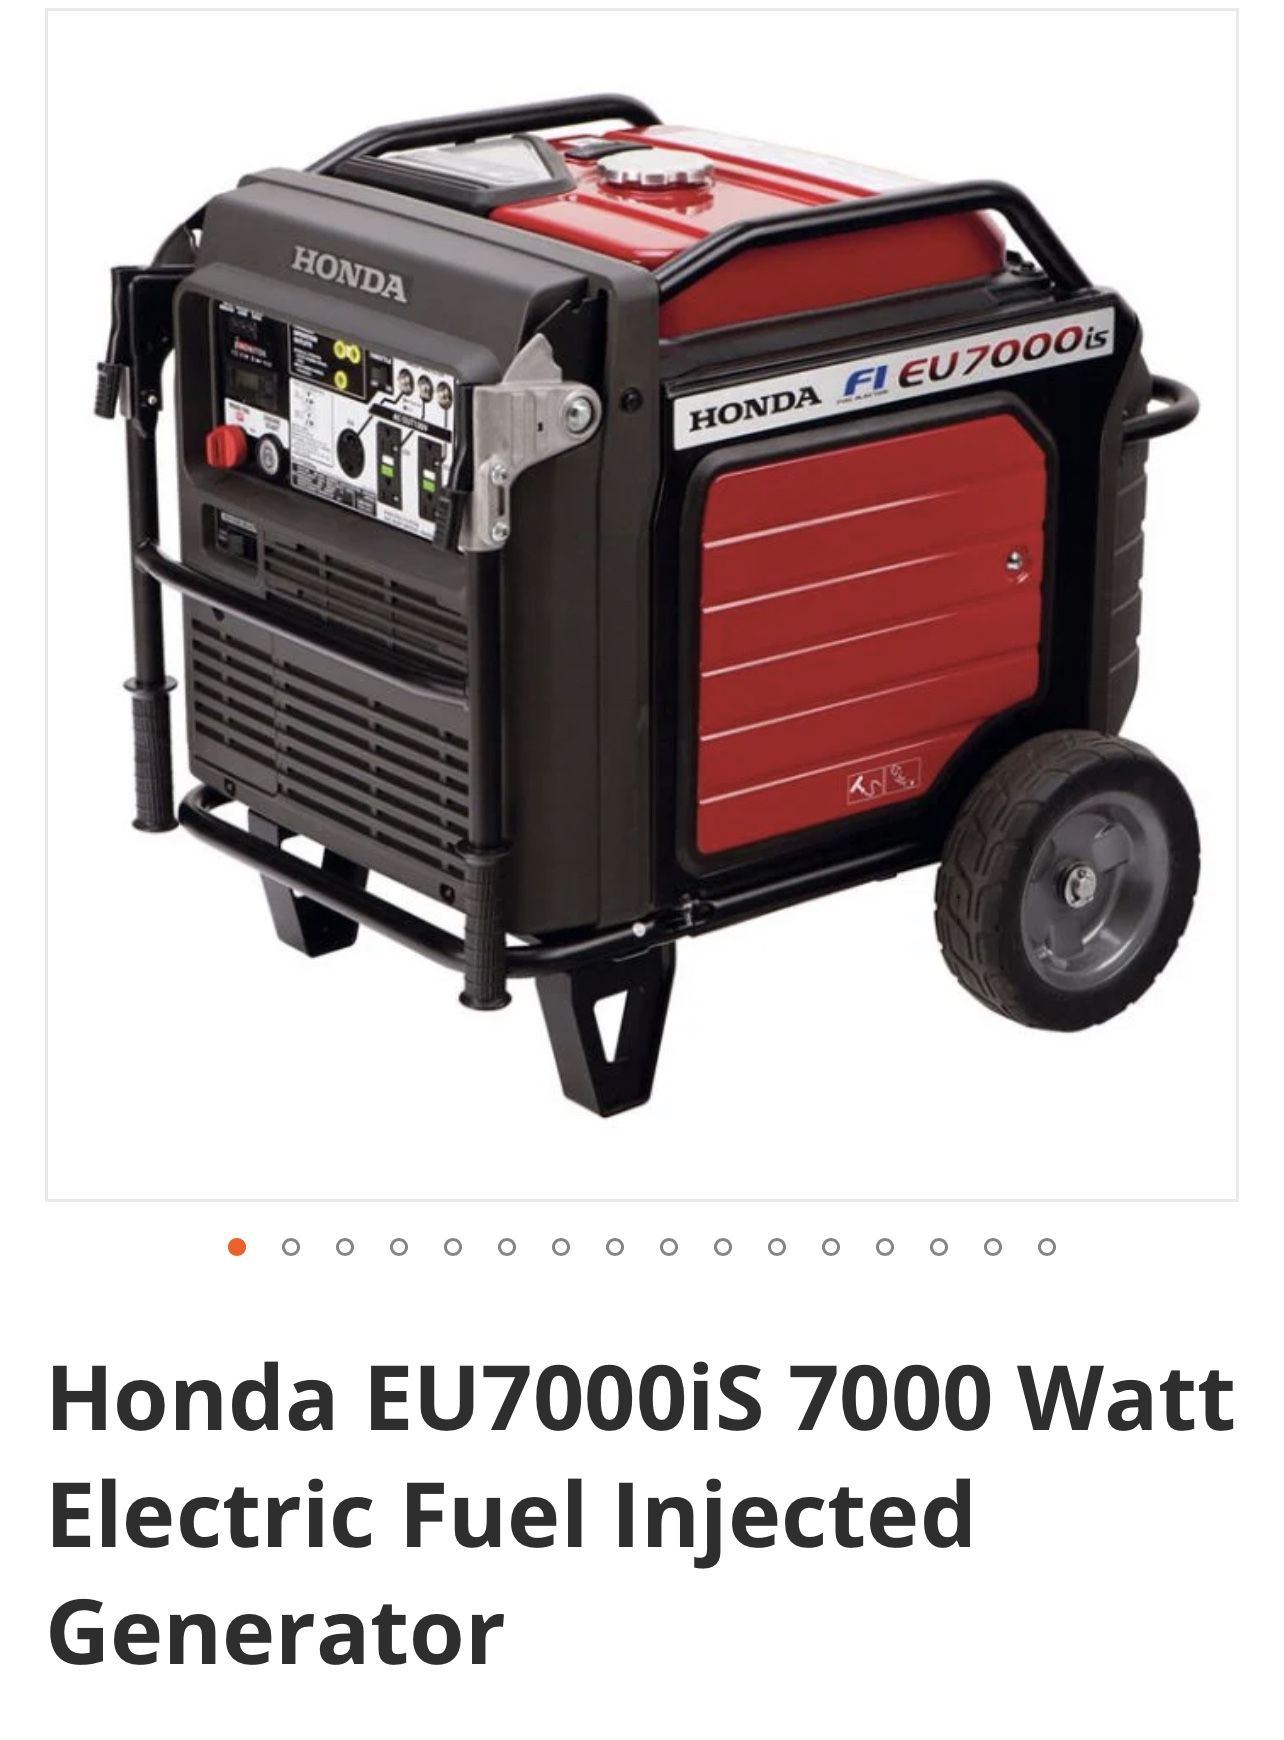 Power plant Honda EU7000is 7000 WATT eléctric ingected generator 2020 for Sale in Miami, FL - OfferUp